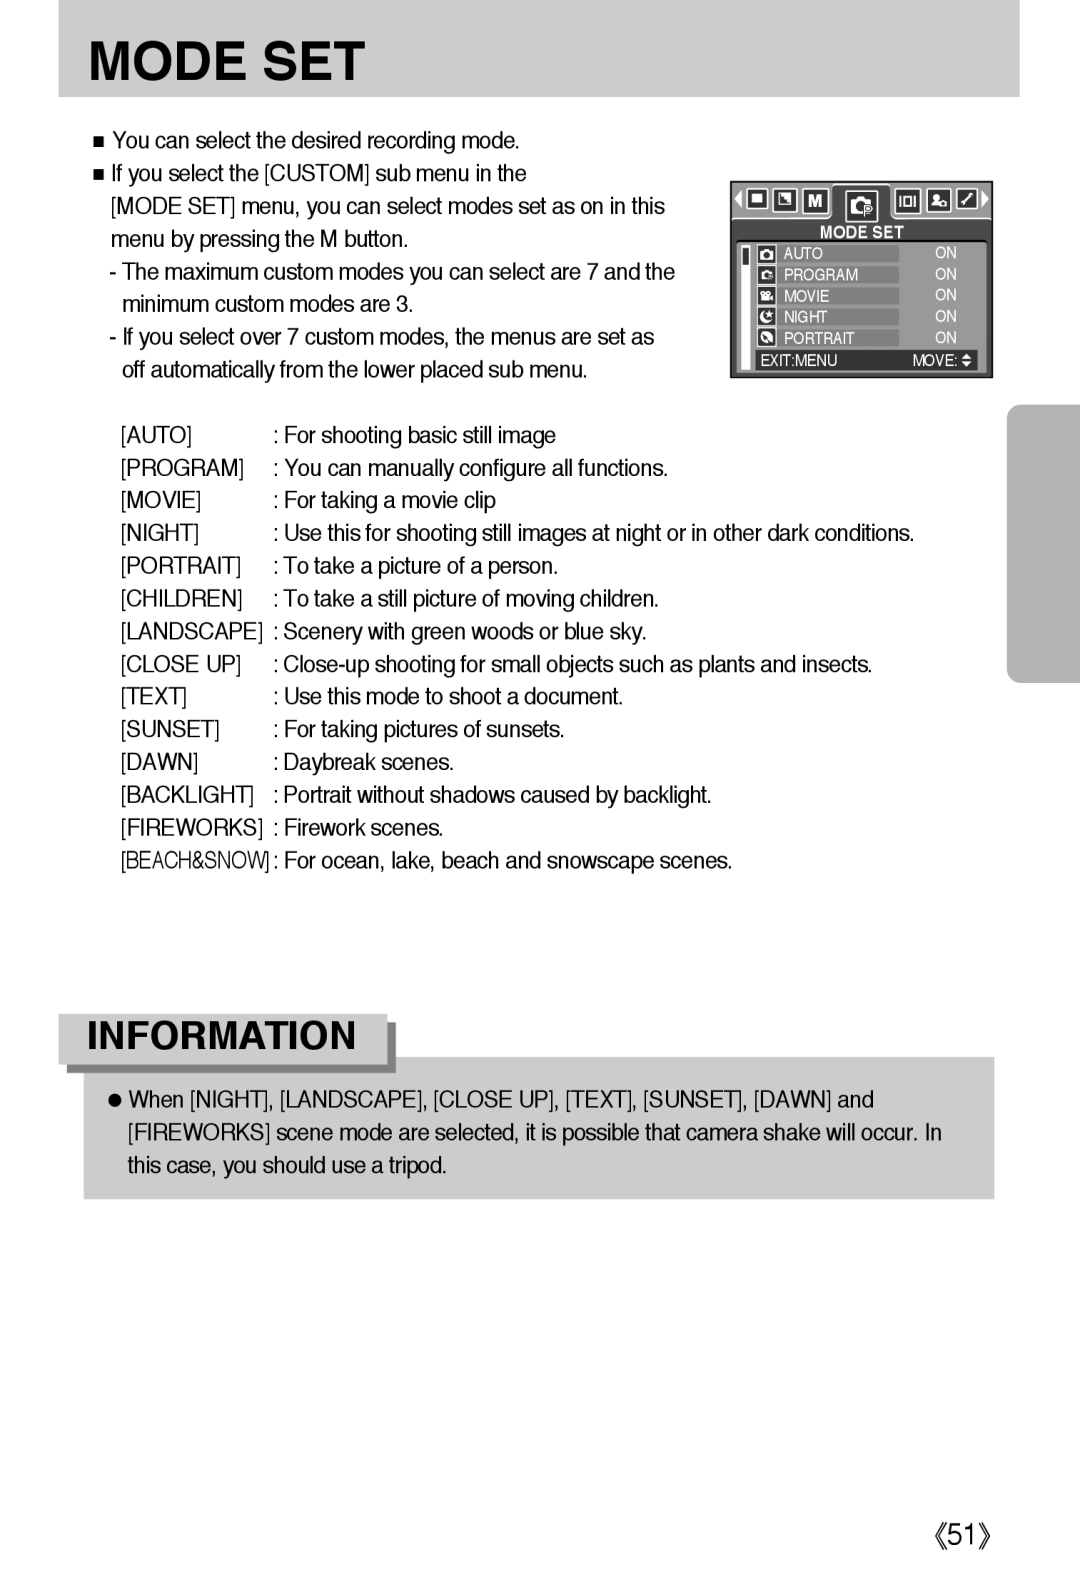 Samsung L50 user manual Mode Set, 《51》, Information 